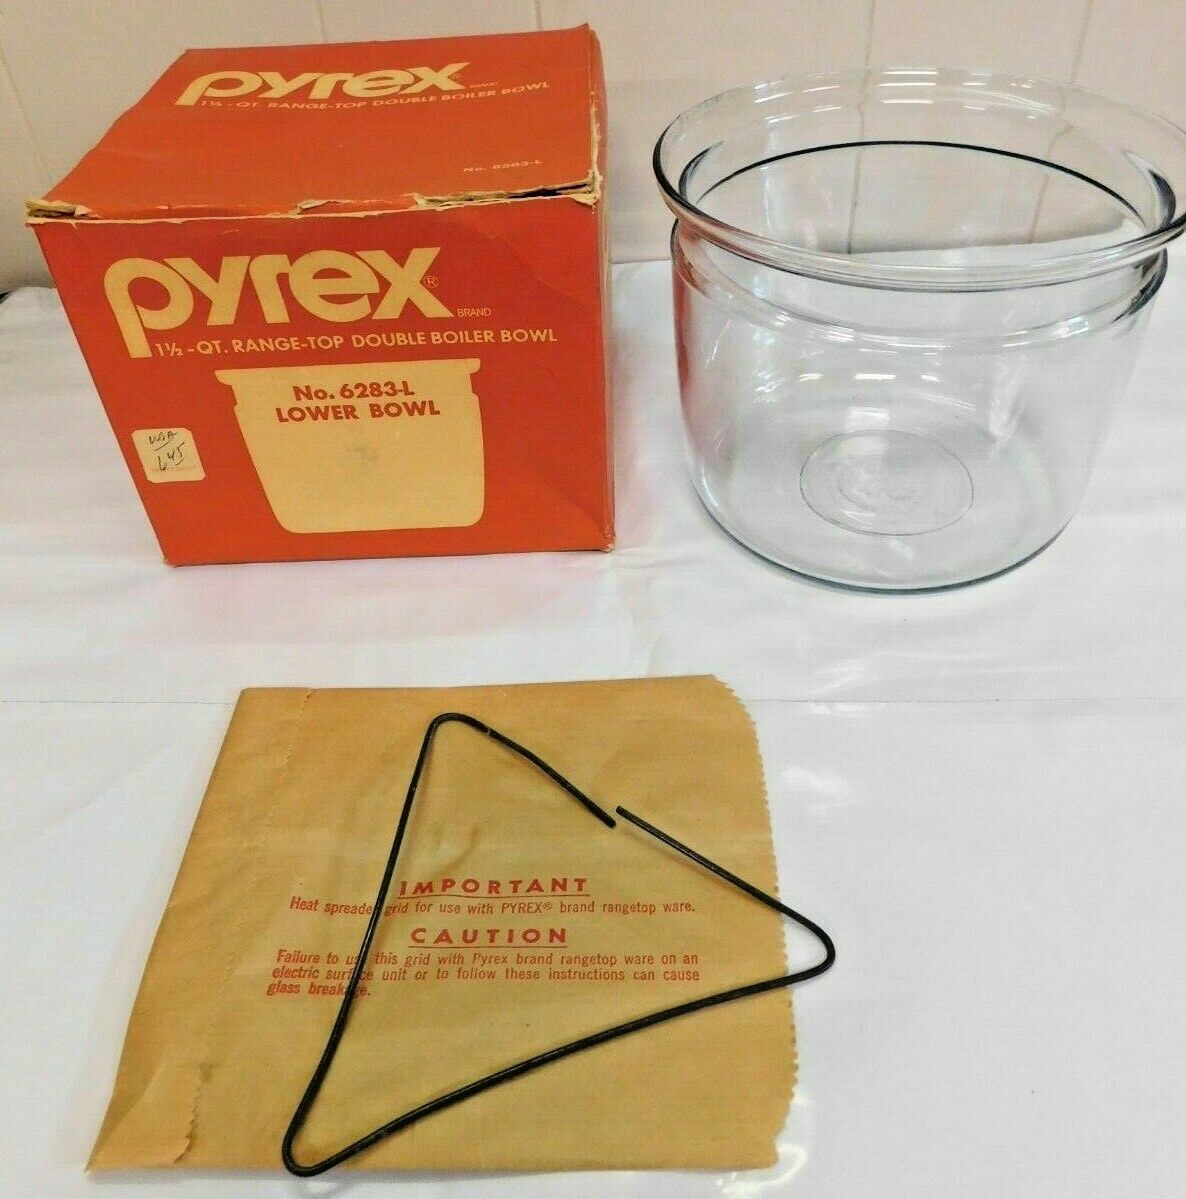 New Box Vintage PYREX Lower Bowl 1 1/2 qt Double Boiler 6283-L Heat Spreader - £32.35 GBP